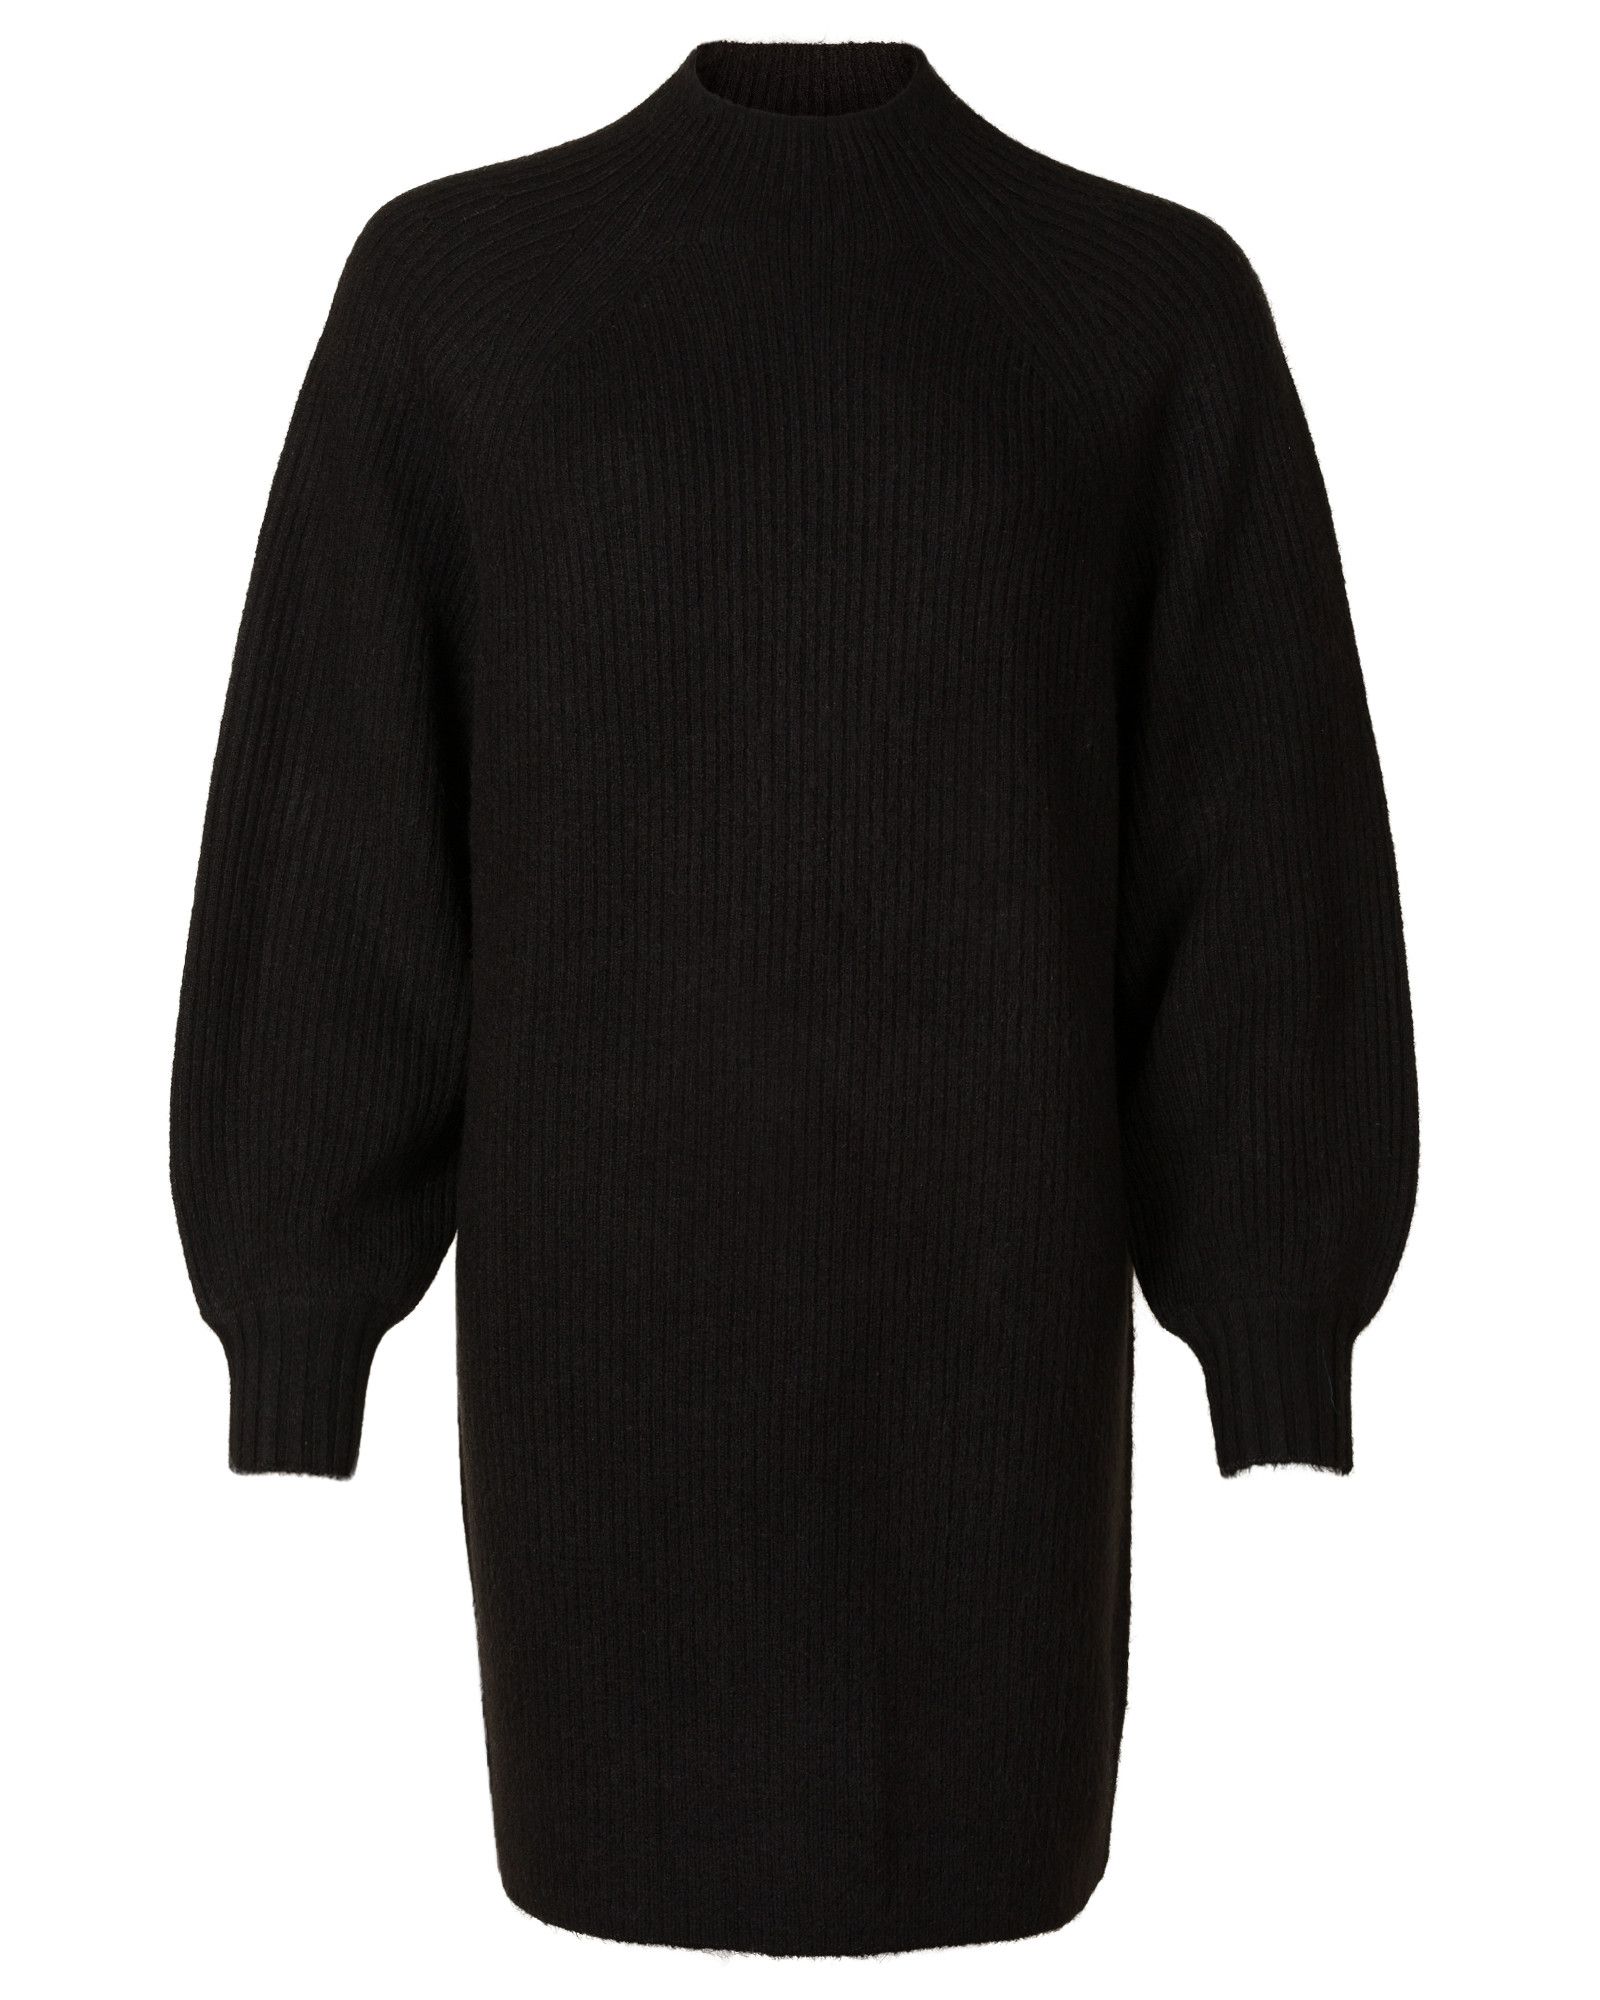 Devotion Black Knitted Jumper Dress | Oliver Bonas